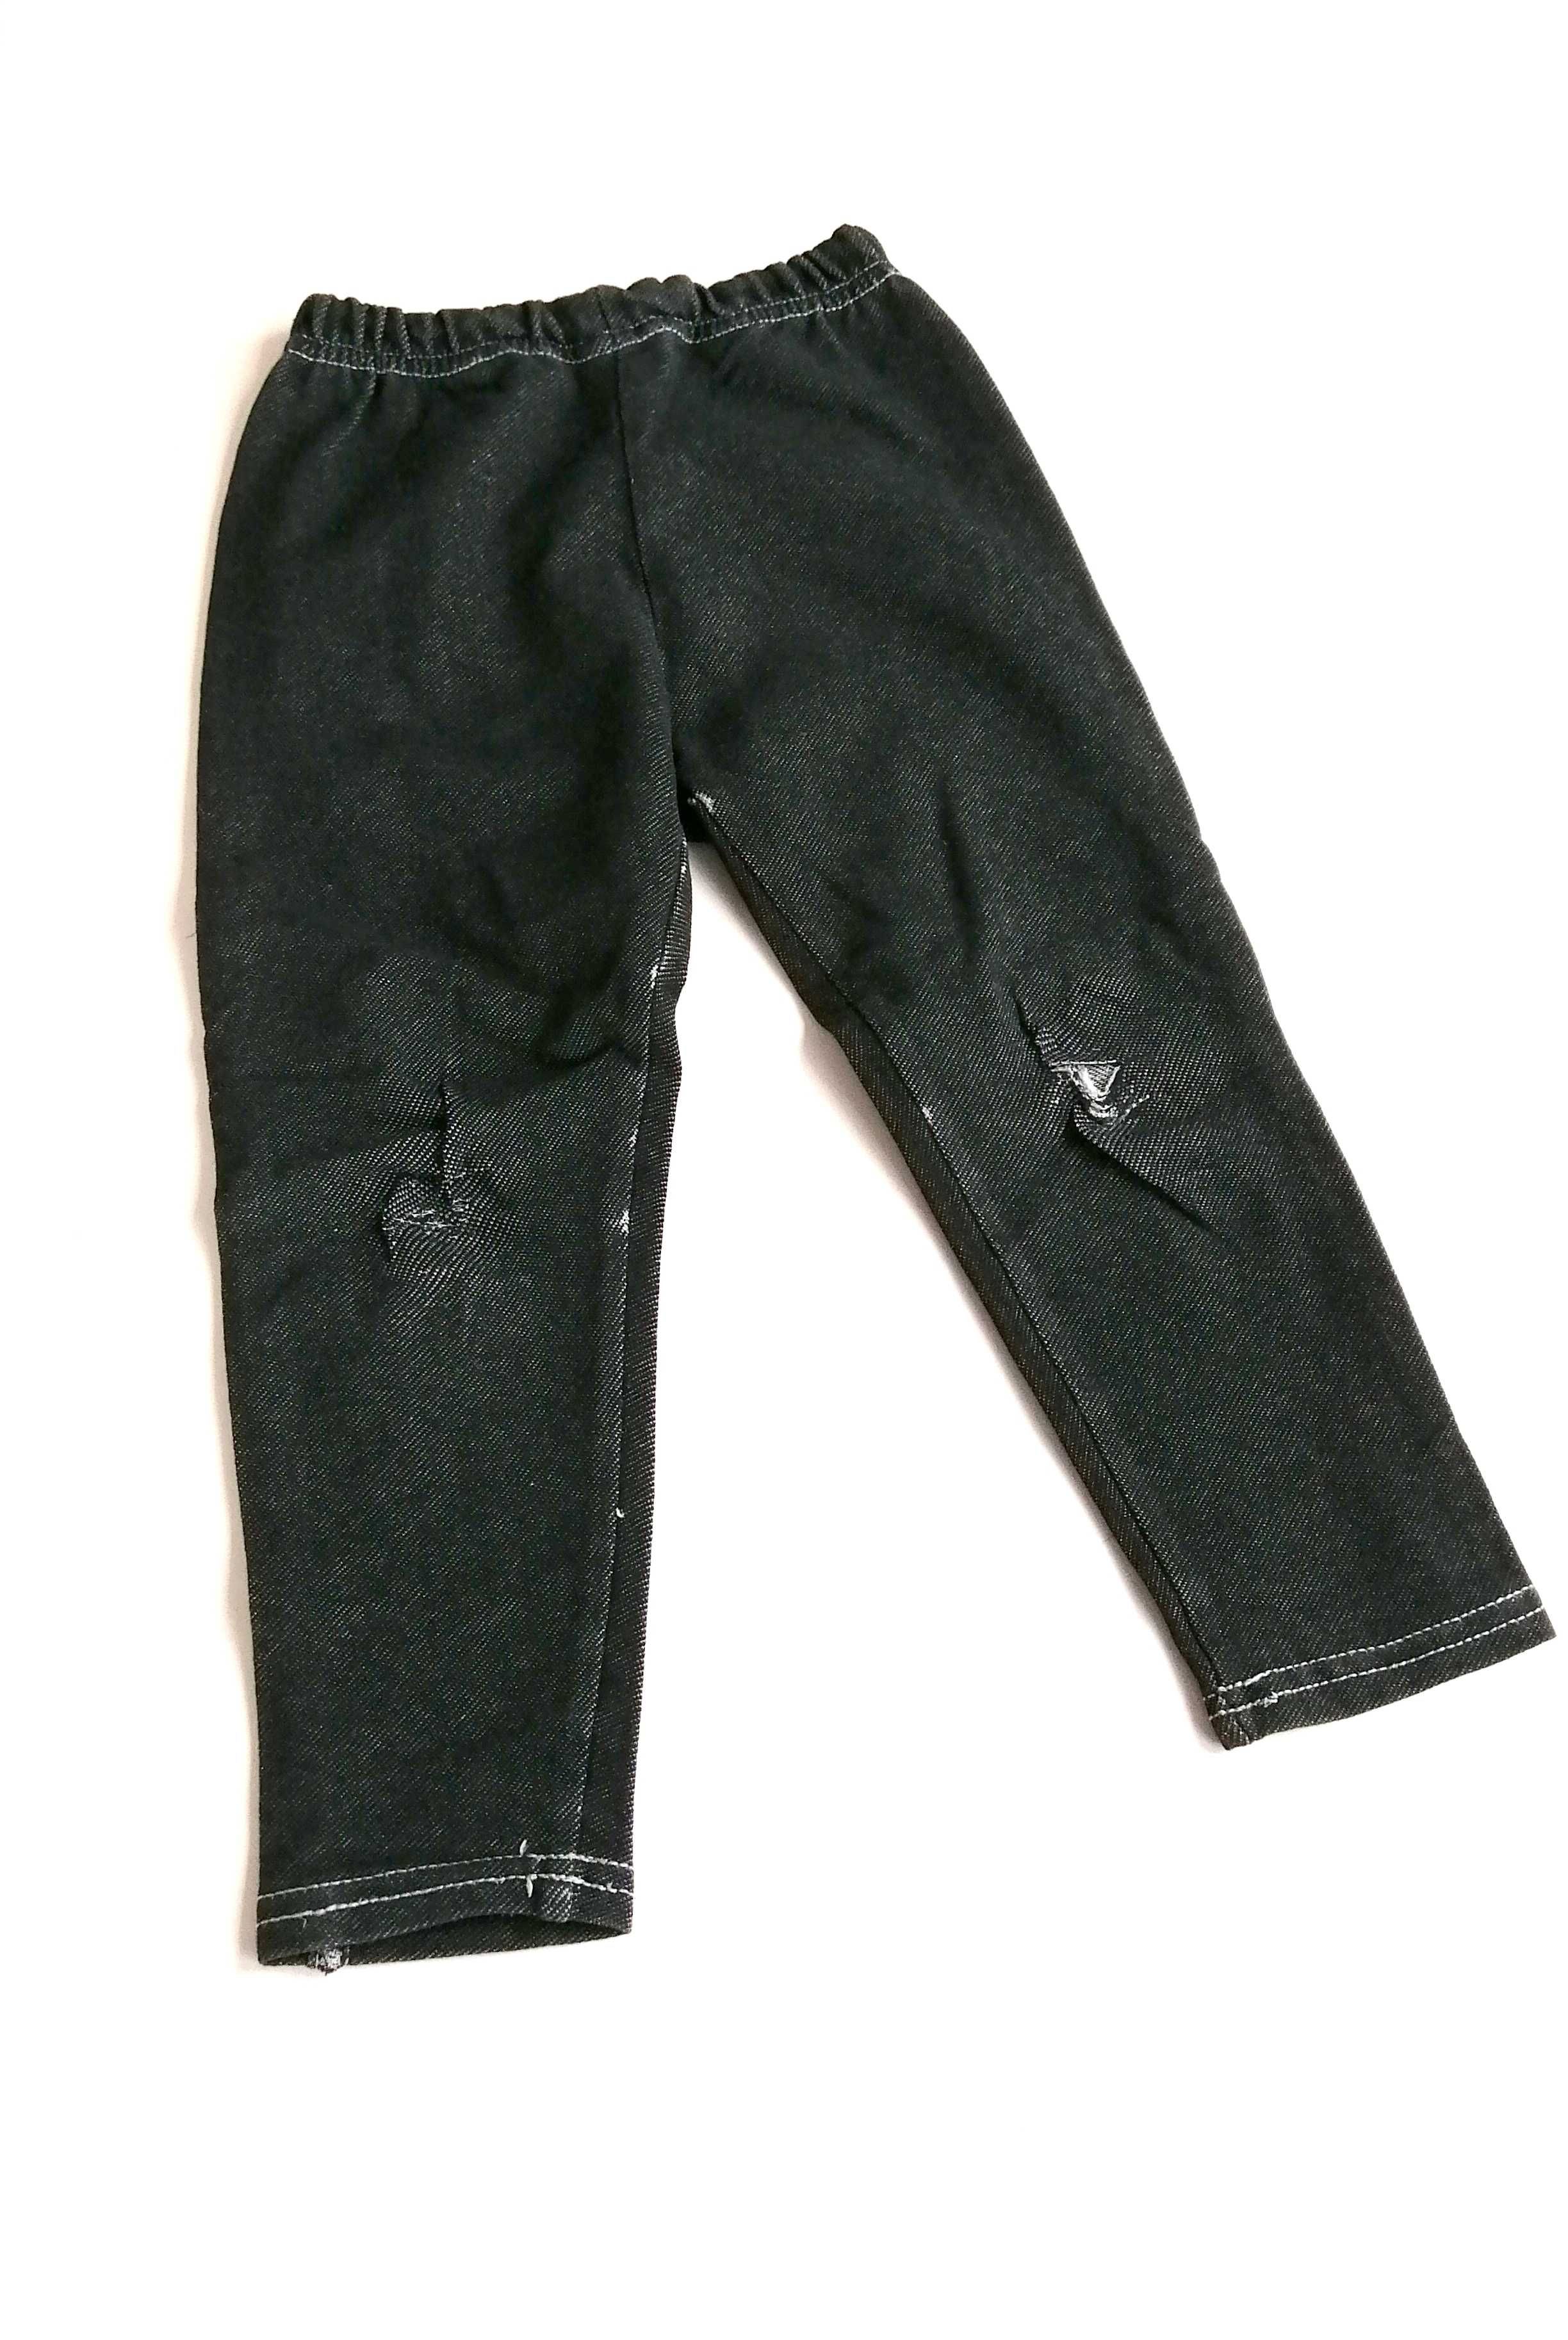 czarne jeansy treginsy leginsy dla dziewczynki 3-4lata ciemne spodnie